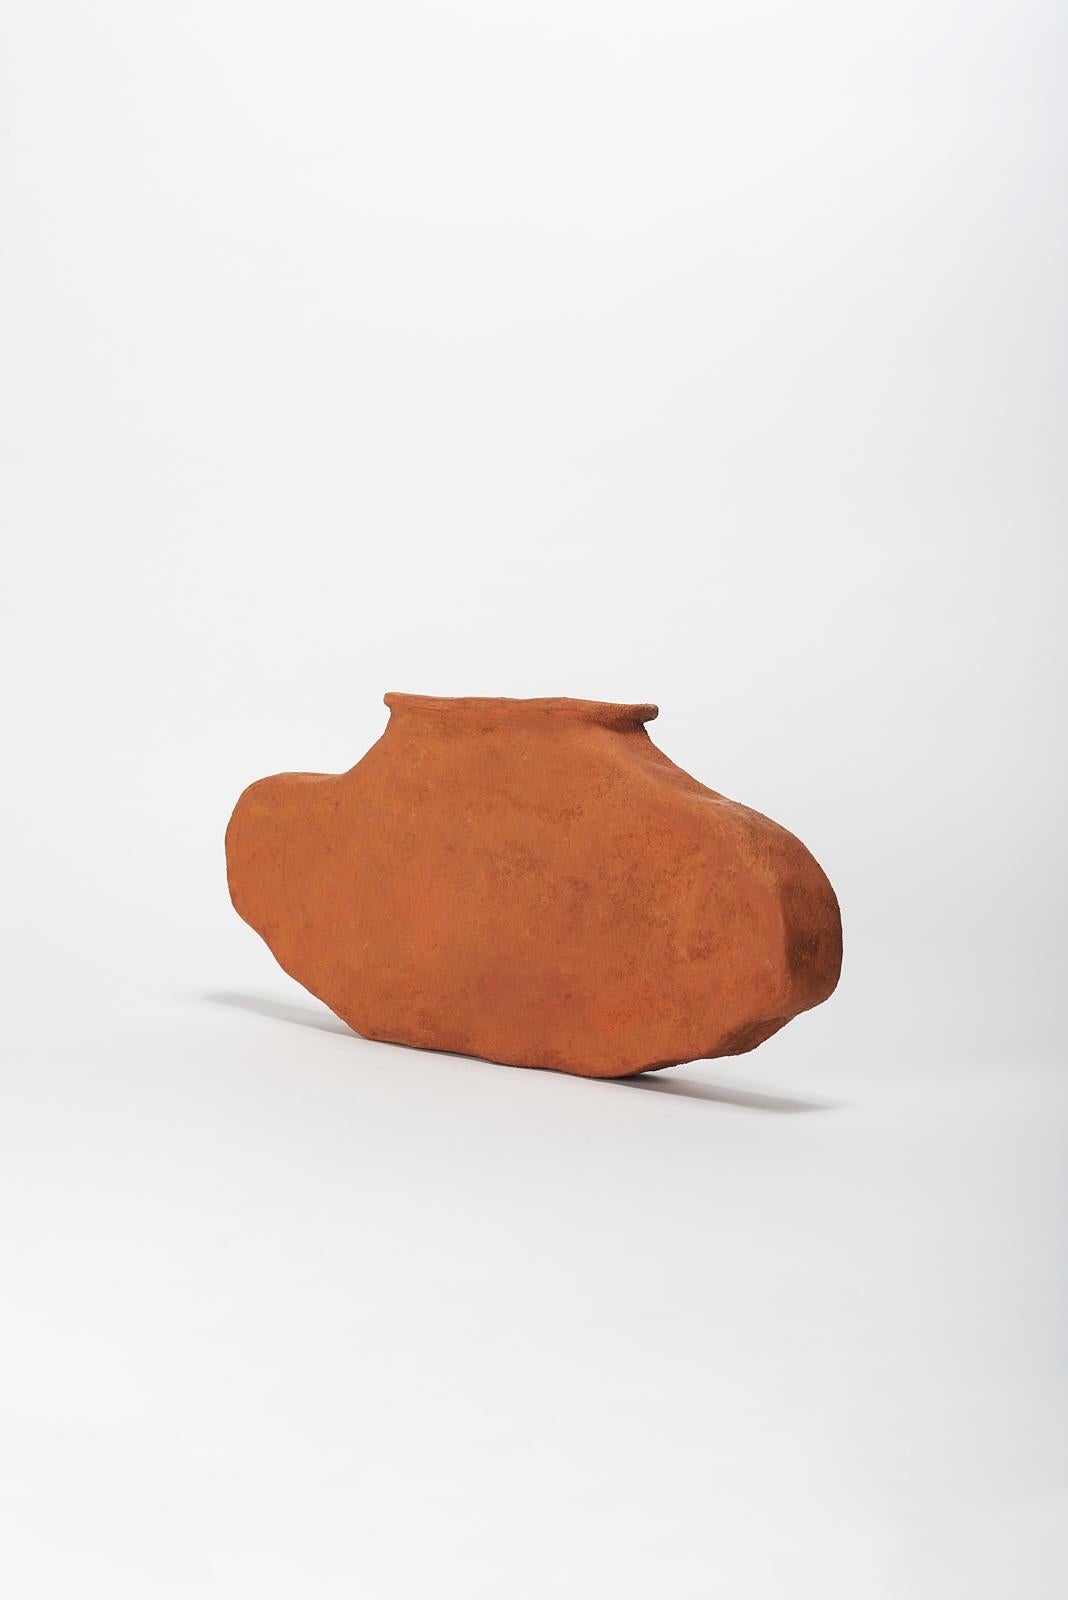 Post-Modern Lata Vase by Willem Van Hooff